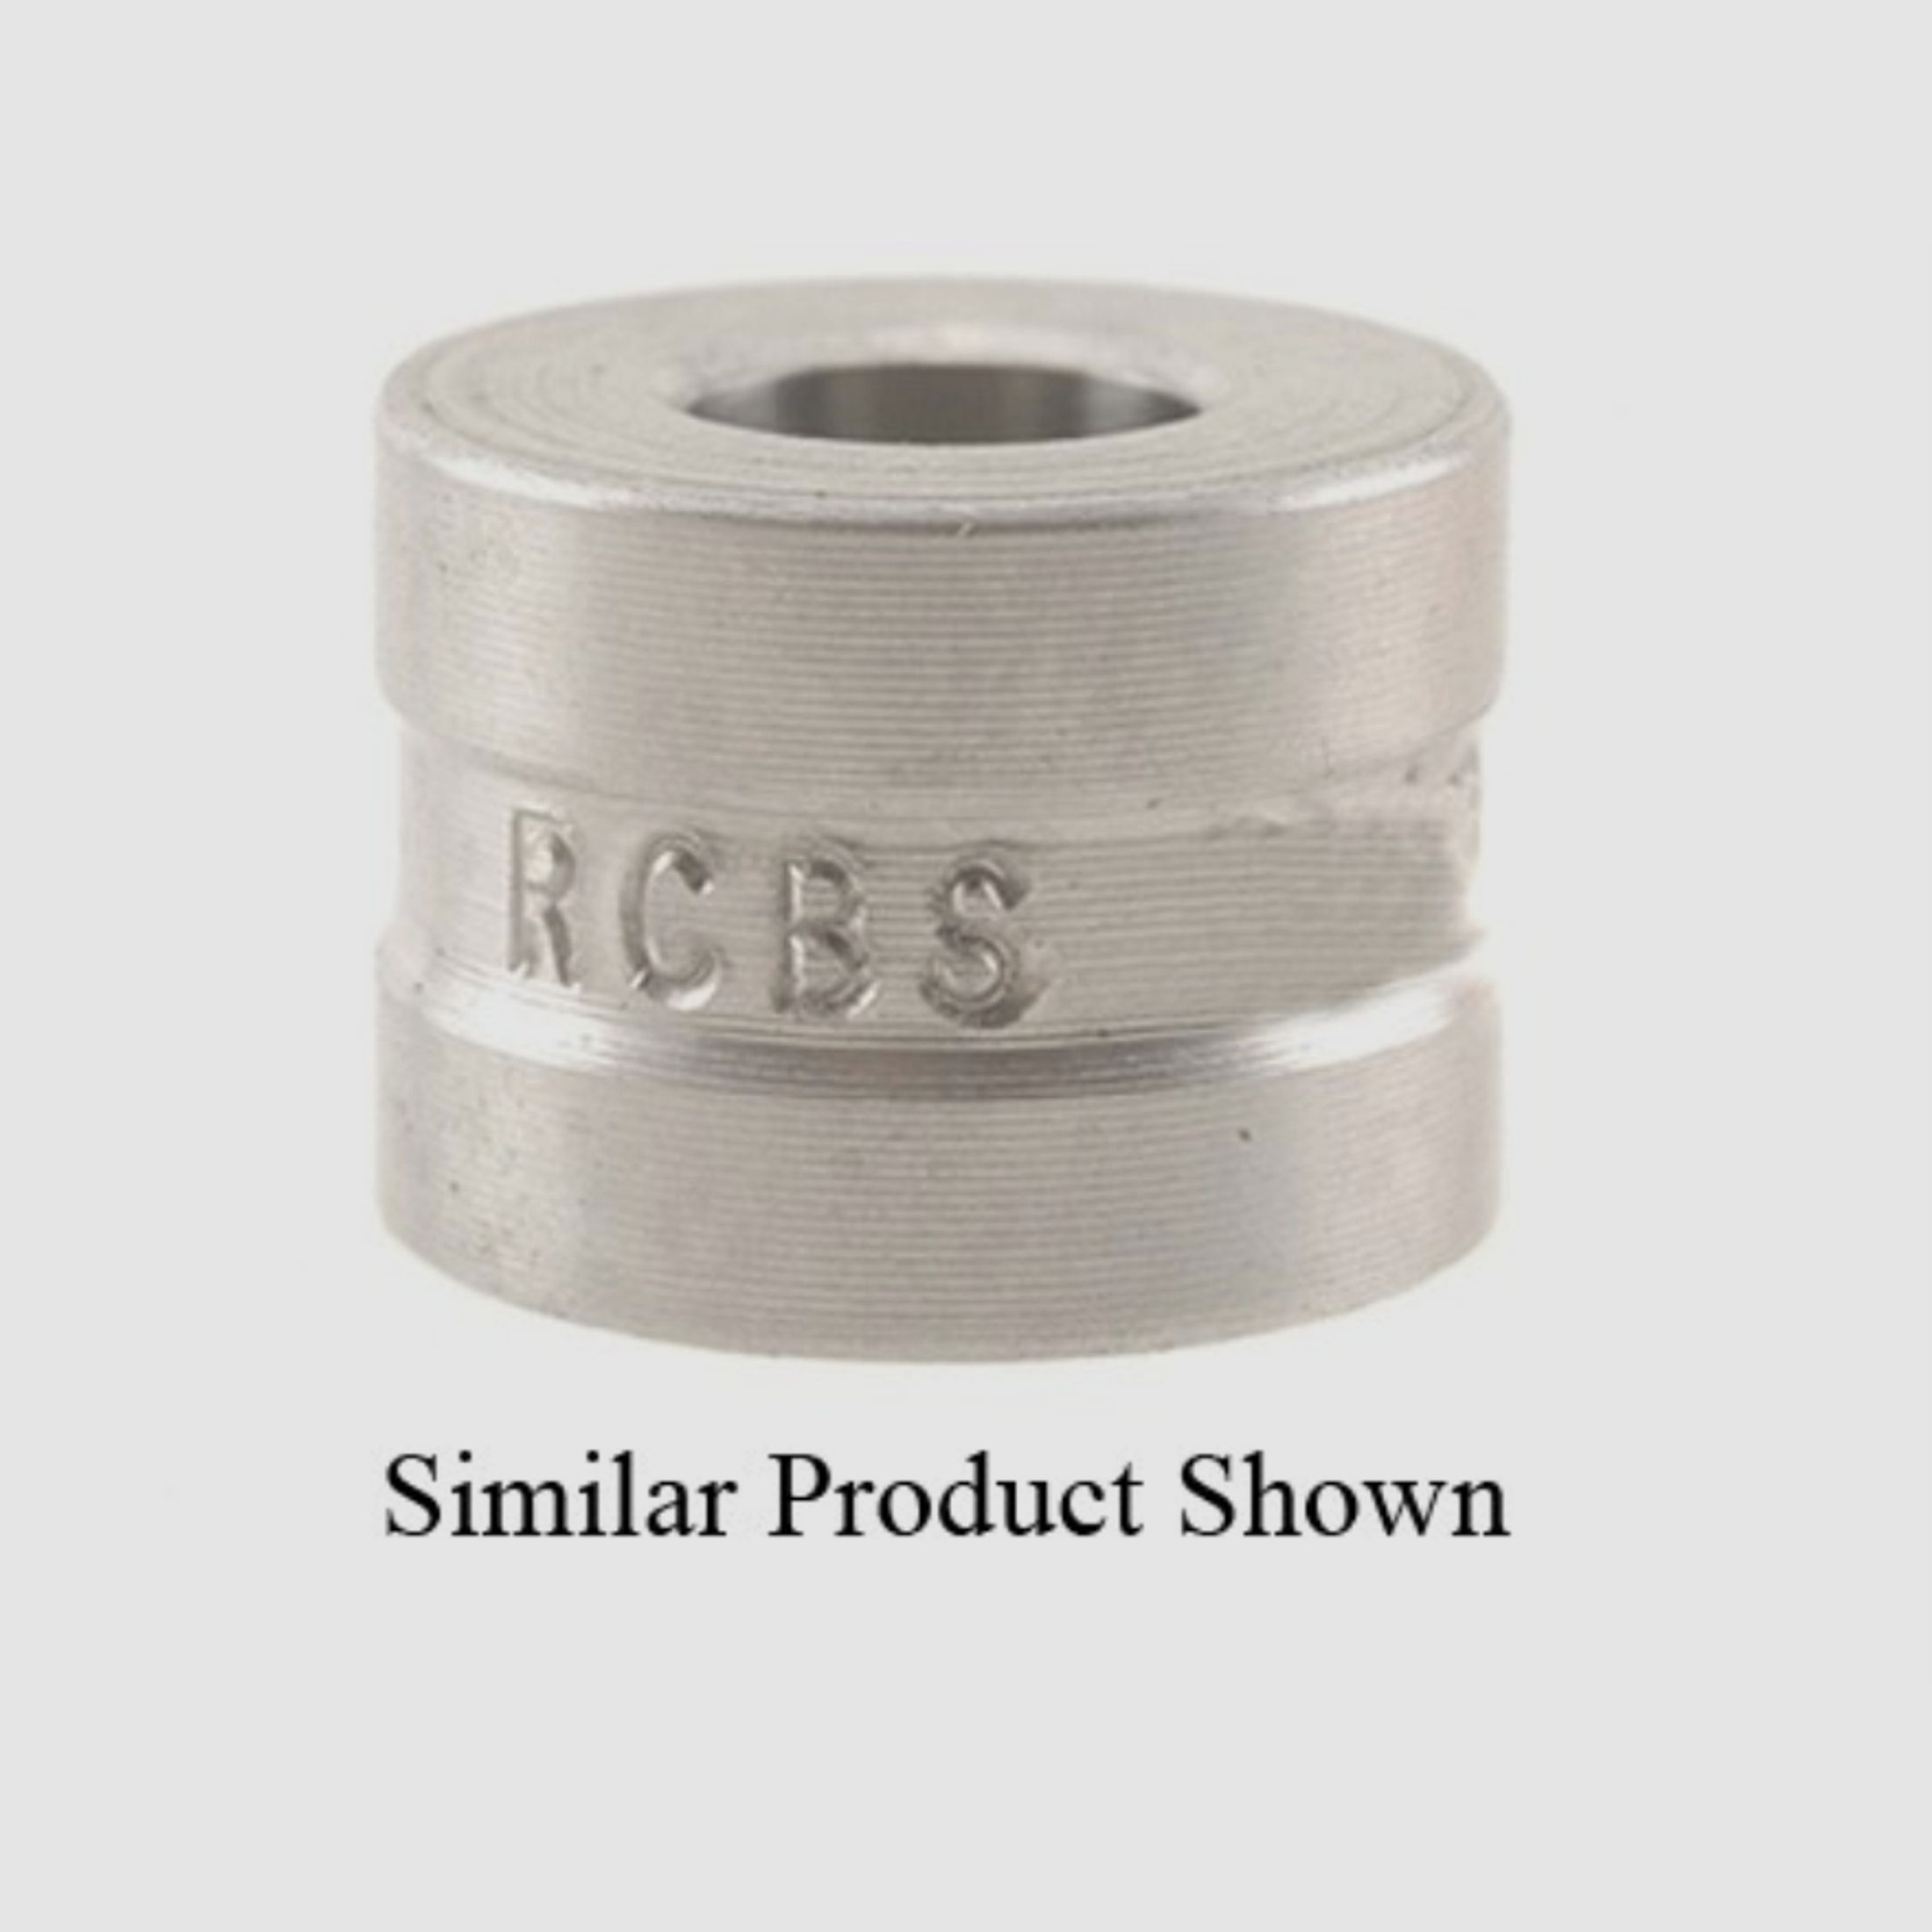 RCBS Steel Neck Sizer Die Bushing .250